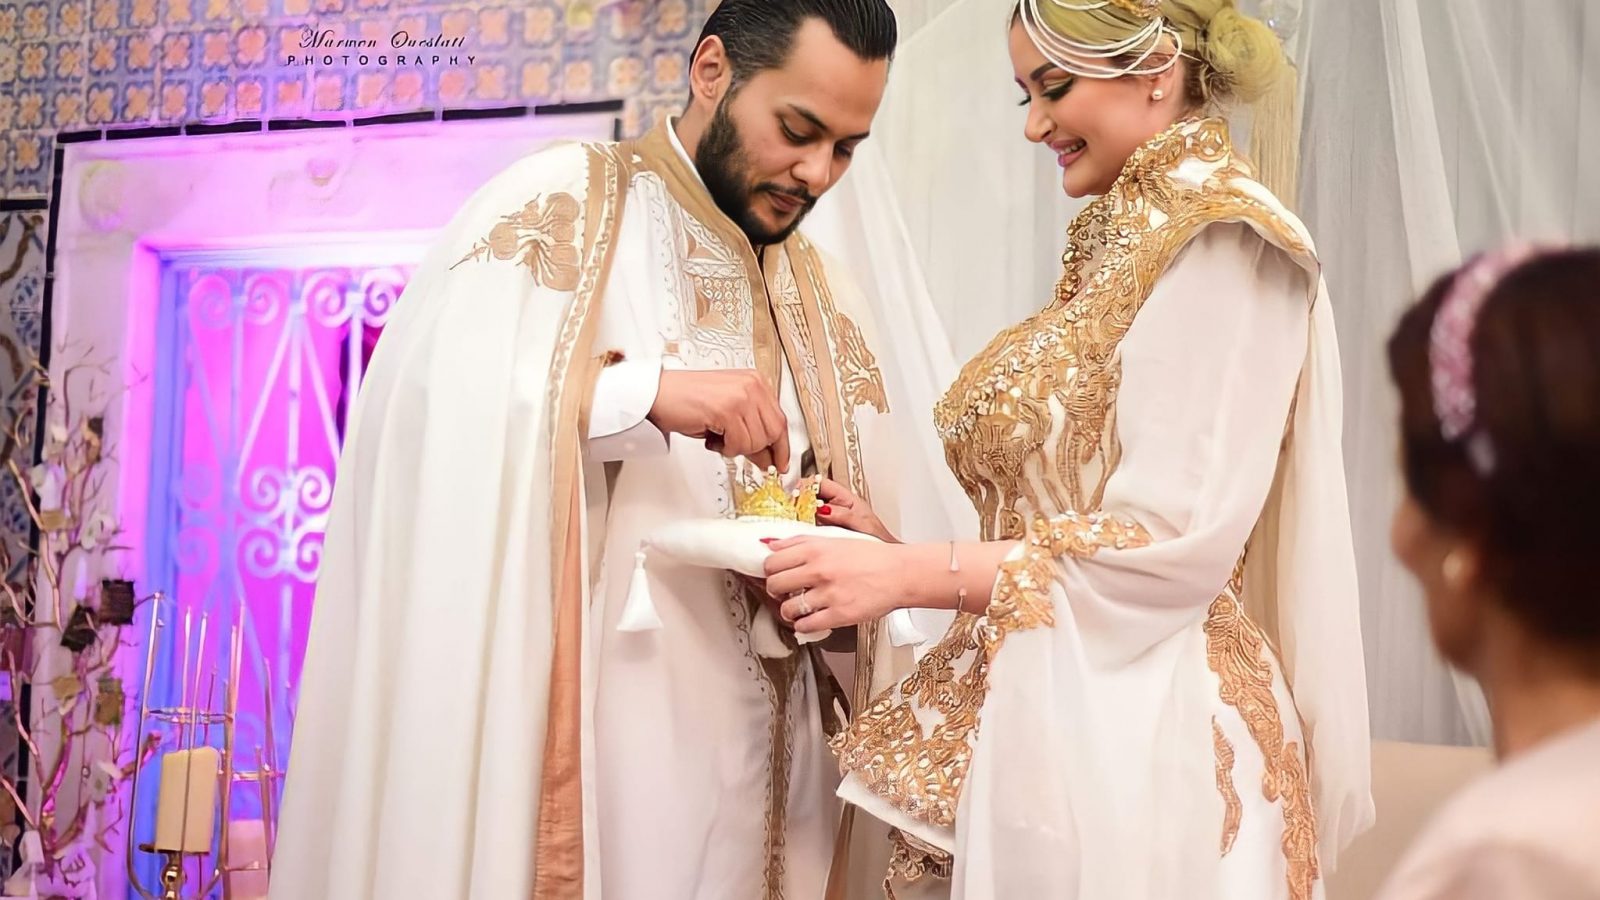 بعد حفل زفافها الأسطوري/ رانيا التومي ترد على منتقديها وتتحدّاهم (فيديو)